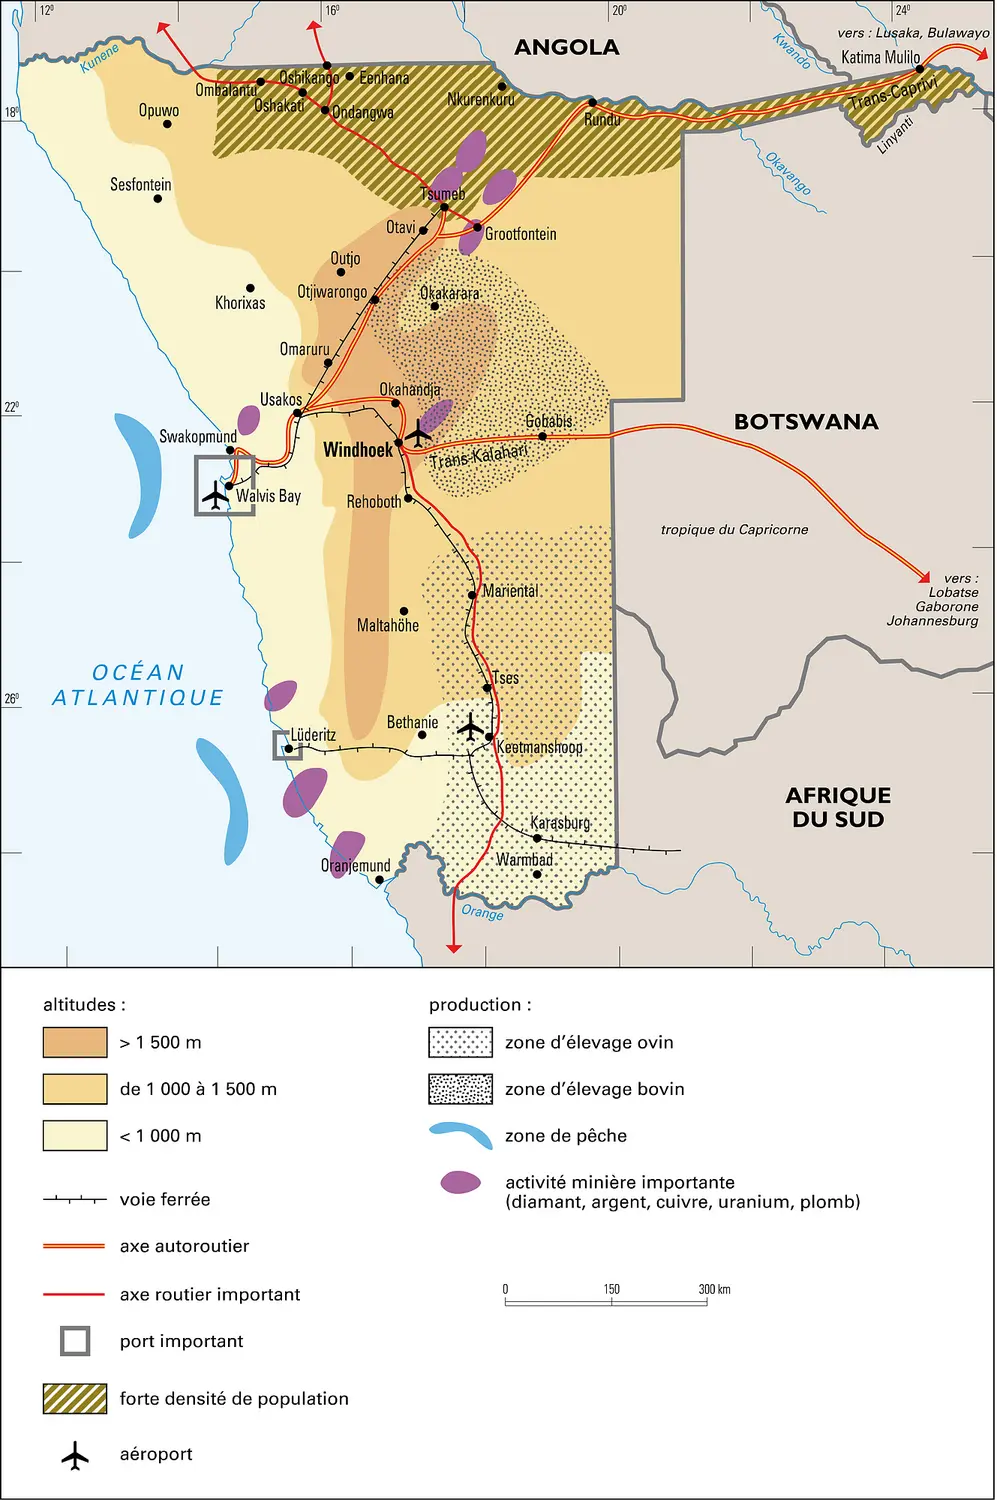 Namibie : territoire et activités